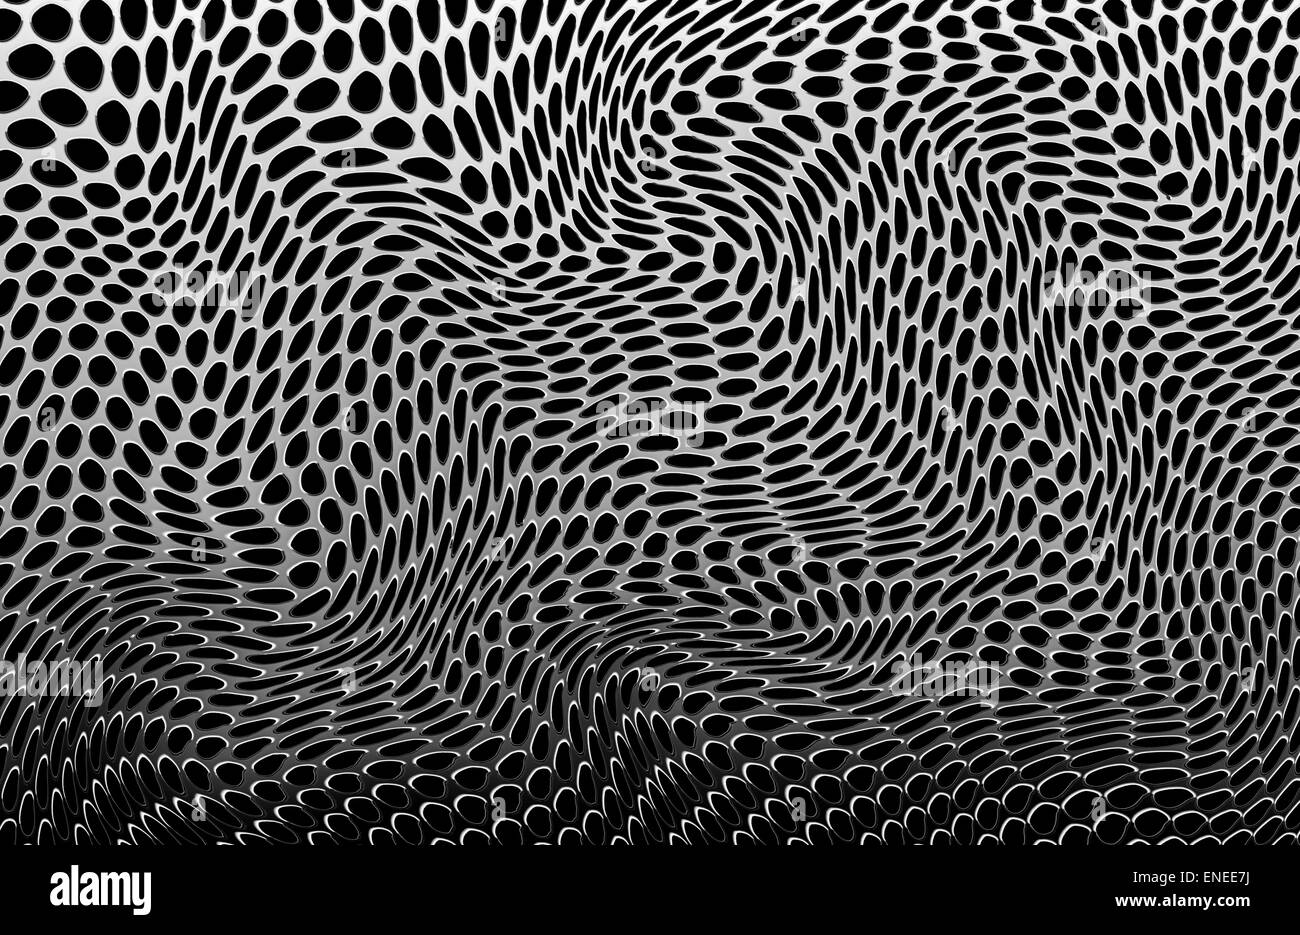 Illustration d'une feuille de trous métalliques déformés, tordus et courbés dans un motif abstrait pour former un effet aléatoire complexe de gauchissement. Banque D'Images